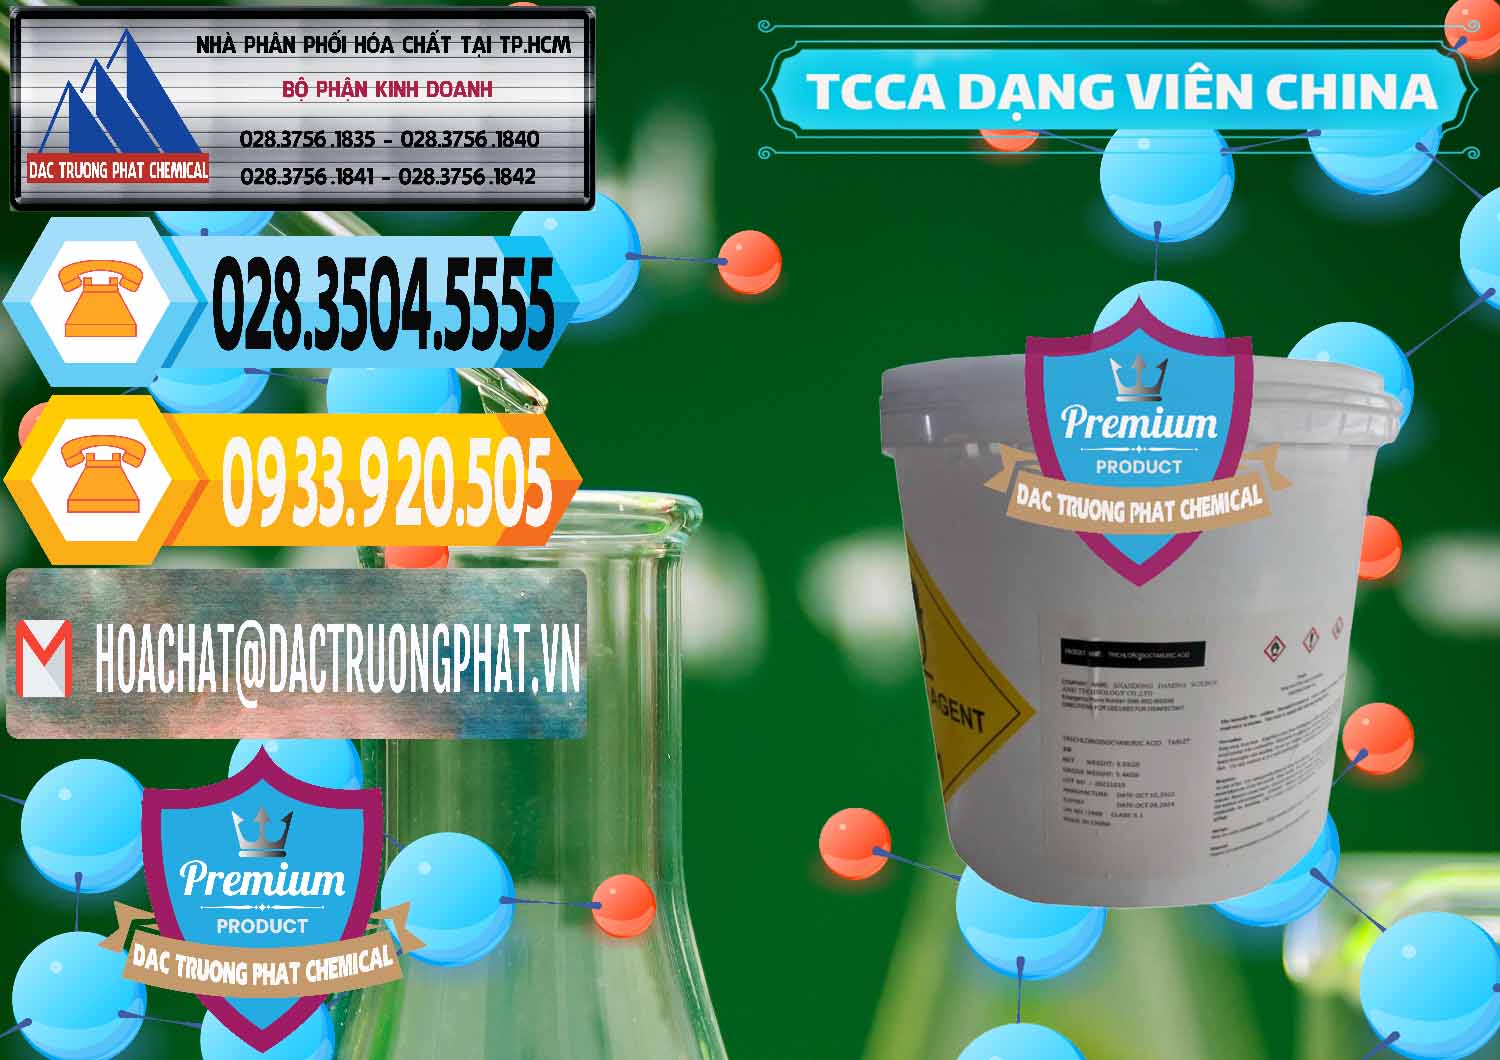 Nhà nhập khẩu ( bán ) TCCA - Acid Trichloroisocyanuric Dạng Viên Thùng 5kg Trung Quốc China - 0379 - Nơi phân phối _ cung cấp hóa chất tại TP.HCM - hoachattayrua.net